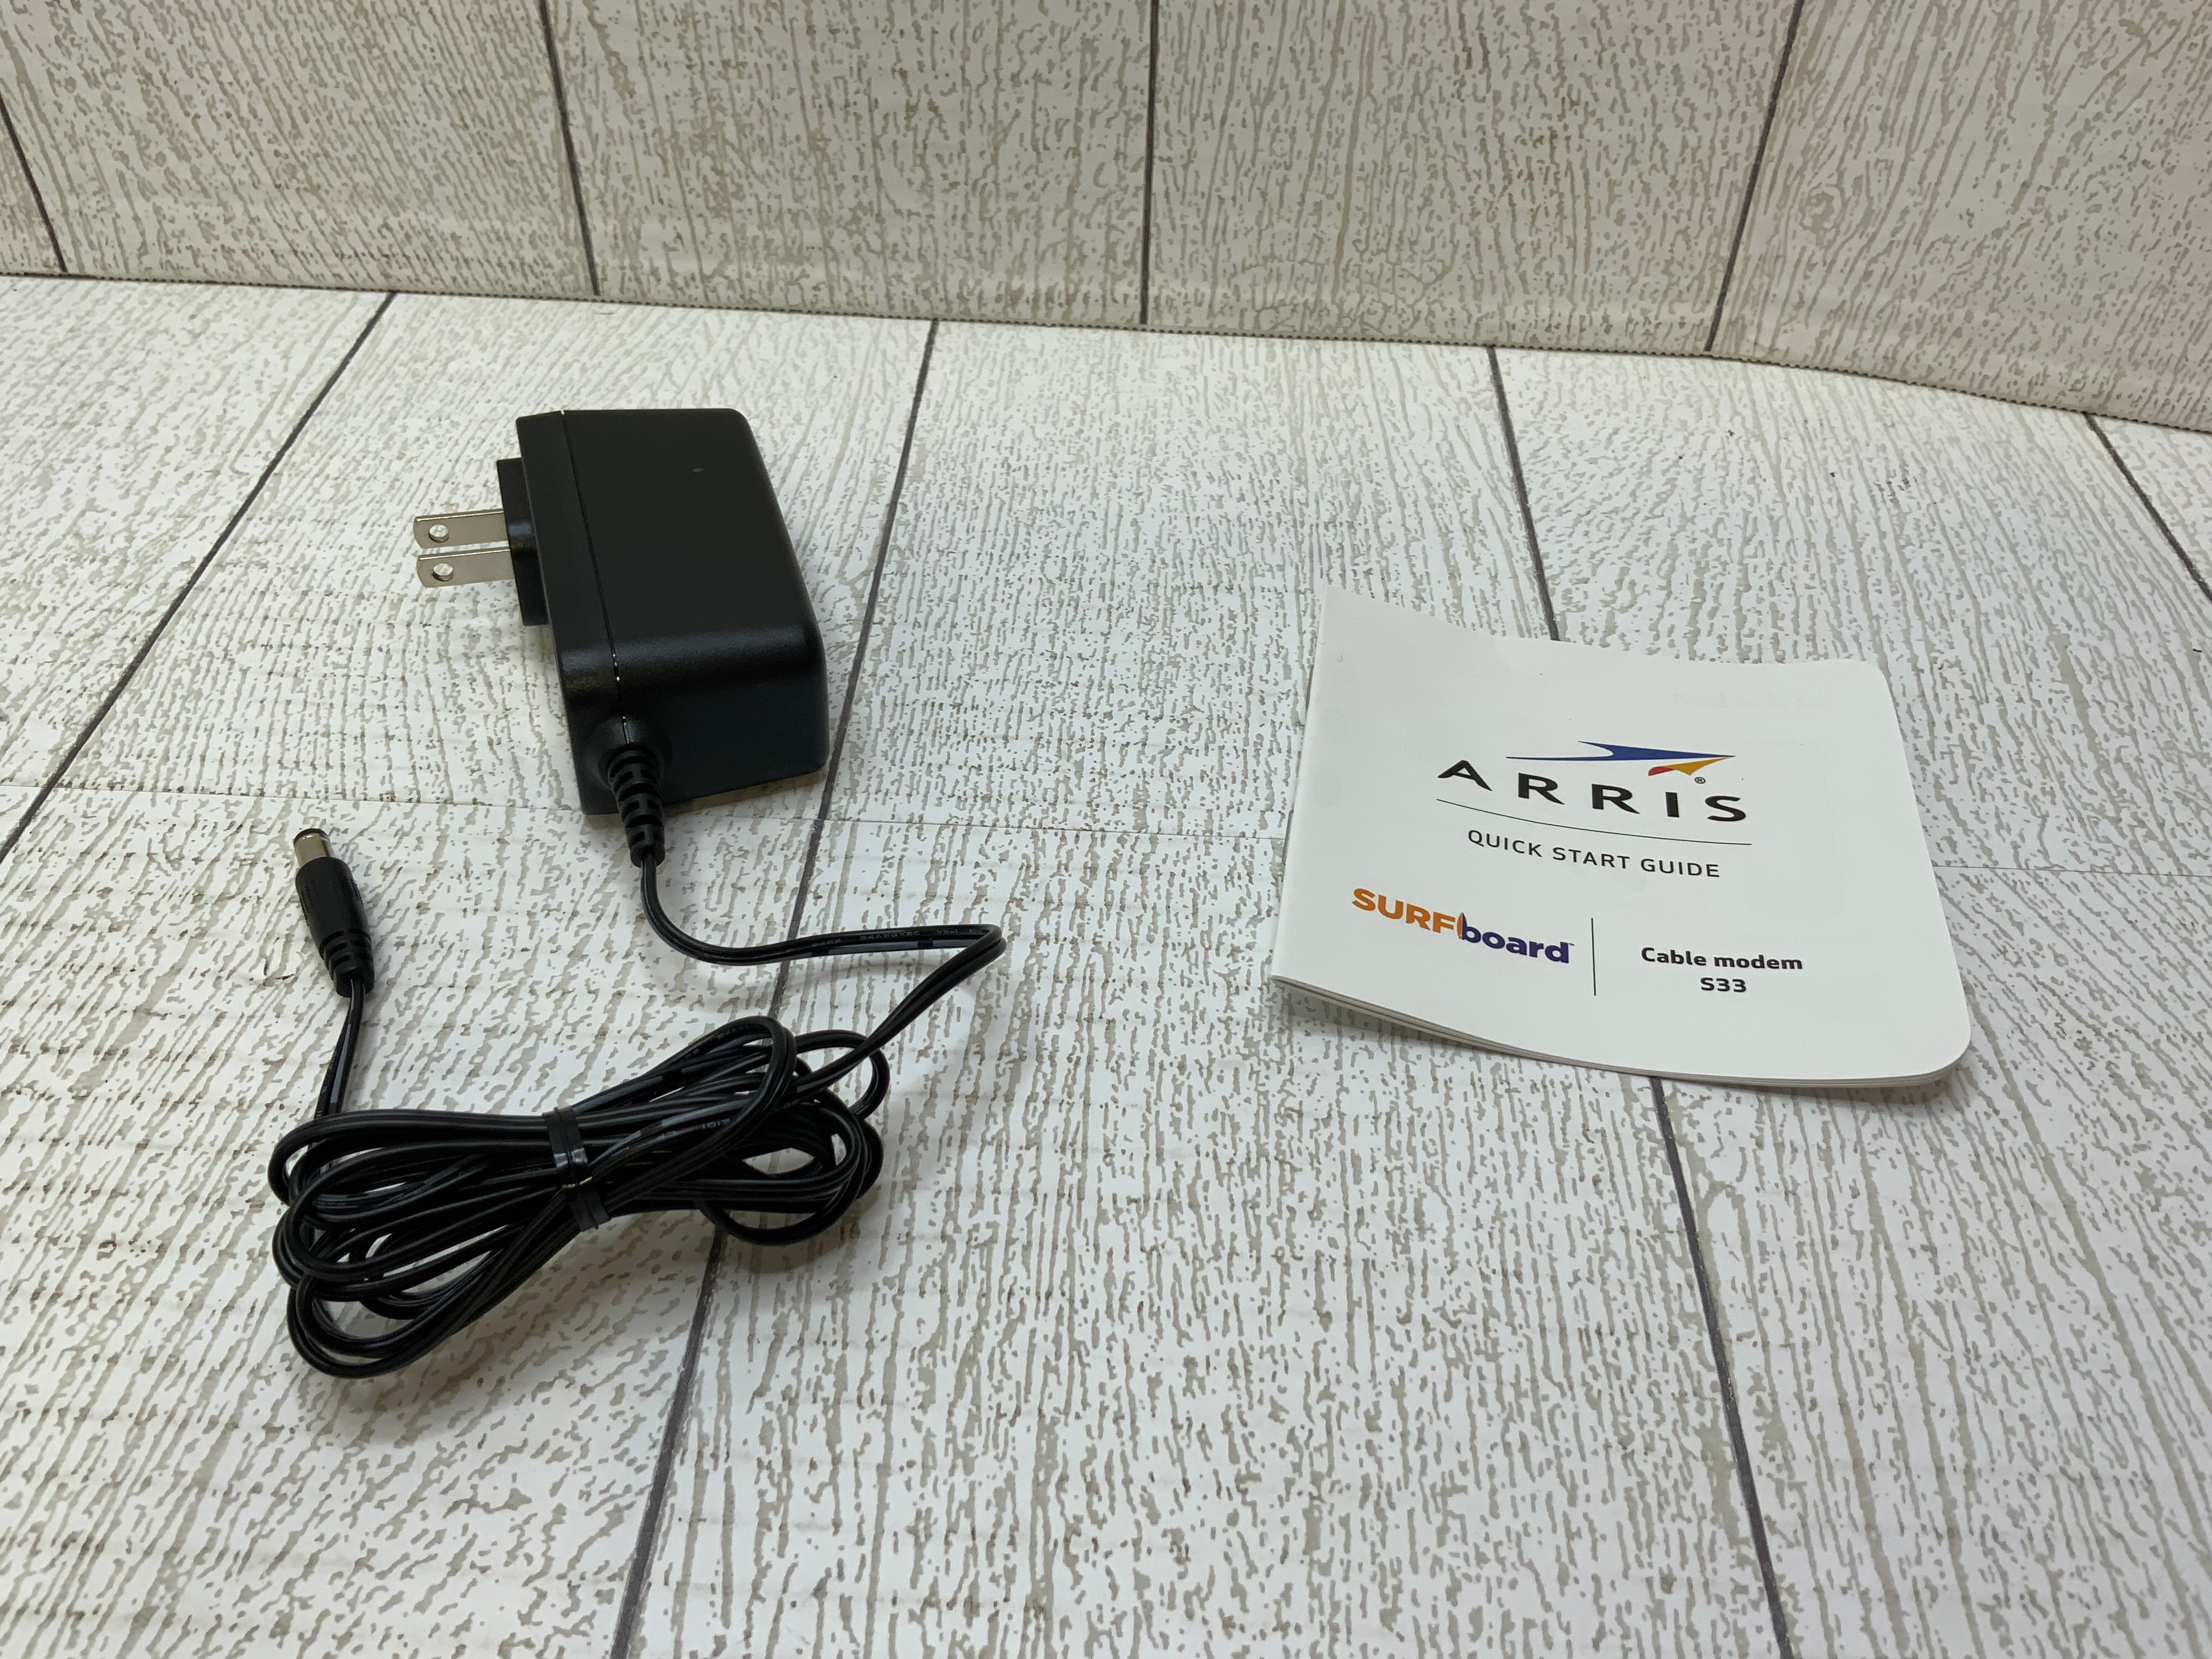 ARRIS Surfboard S33 DOCSIS 3.1 Multi-Gigabit Cable Modem (7937183678702)